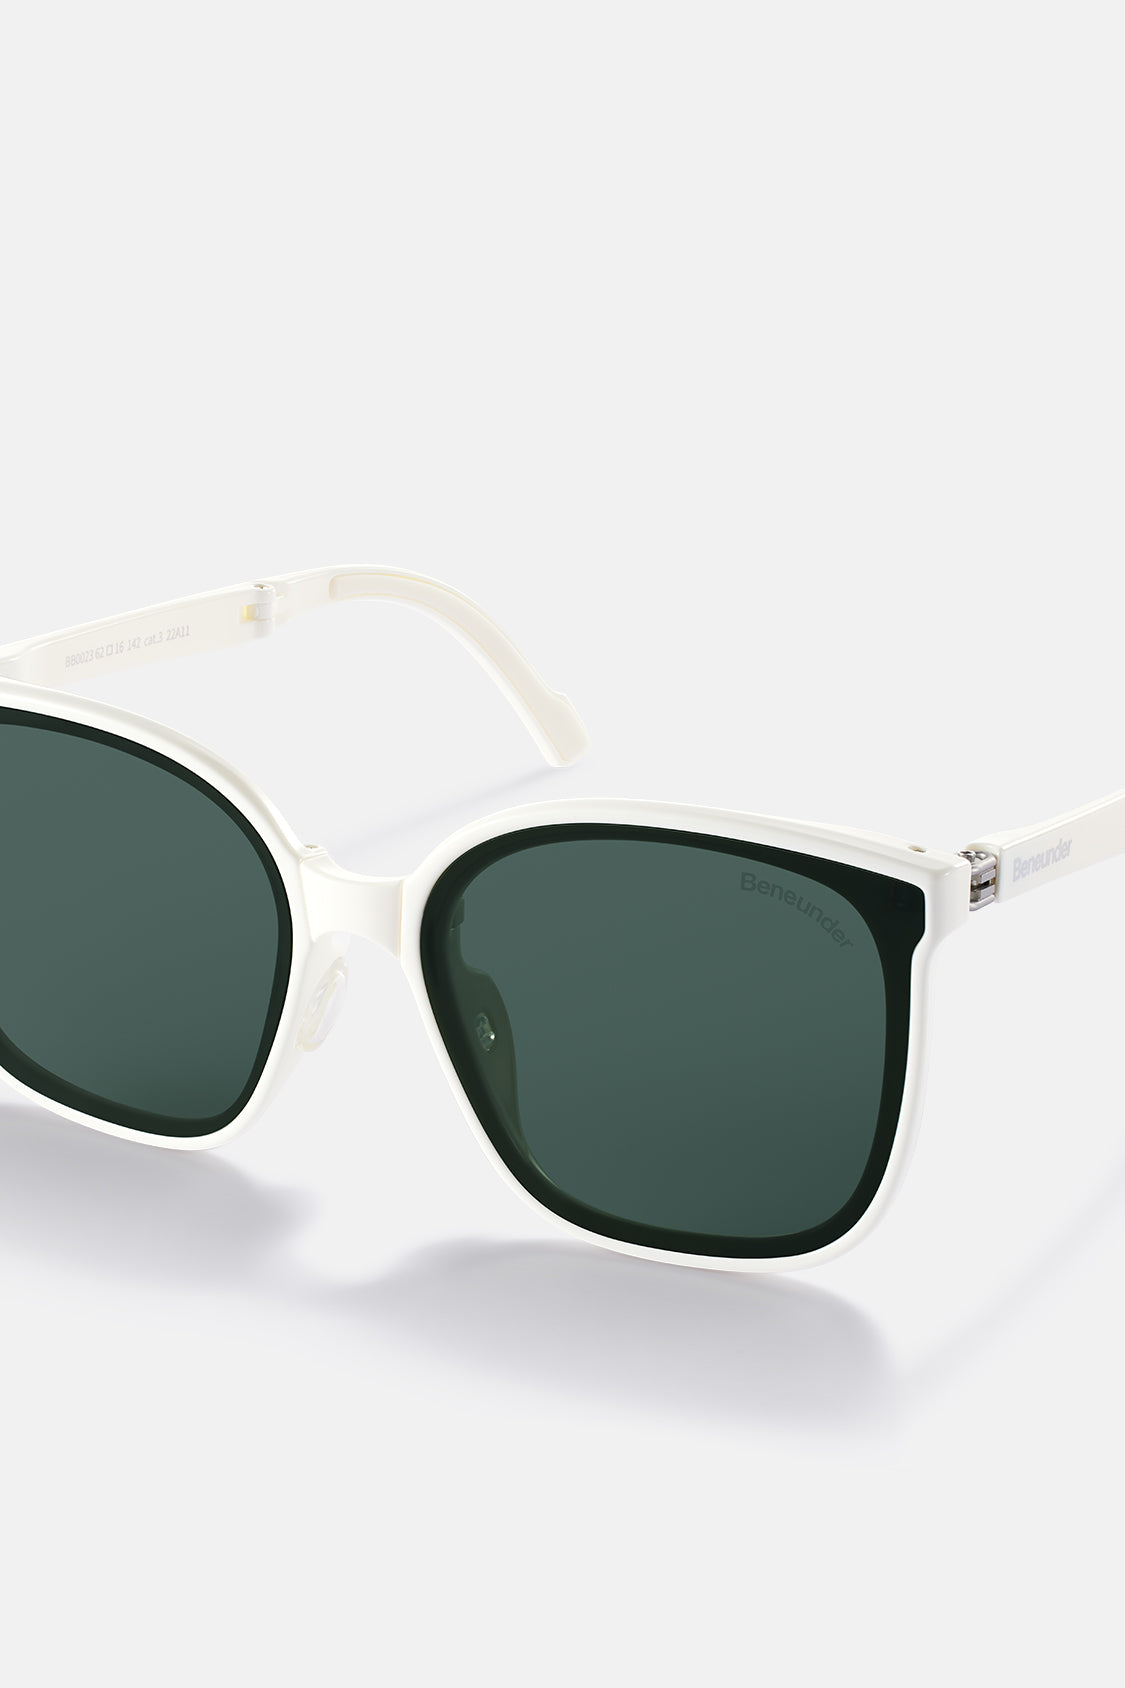 beneunder men's neonspace polarized folding sunglasses shades for women men #color_white